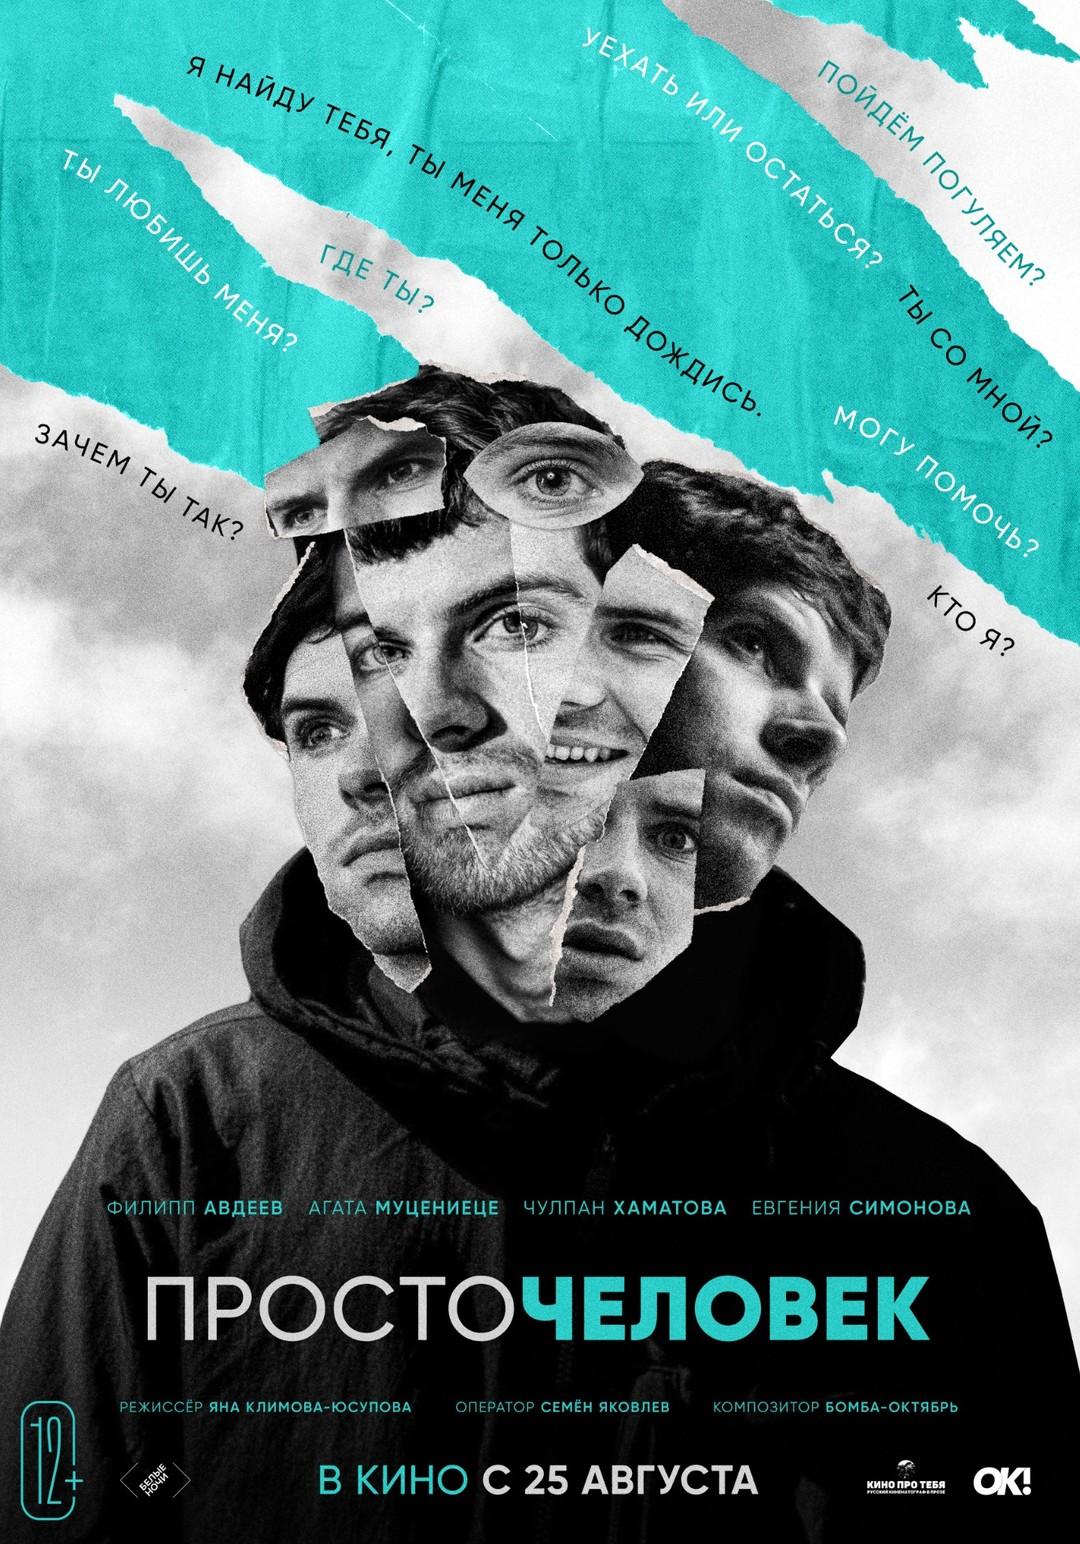 Постер фильма Просточеловек